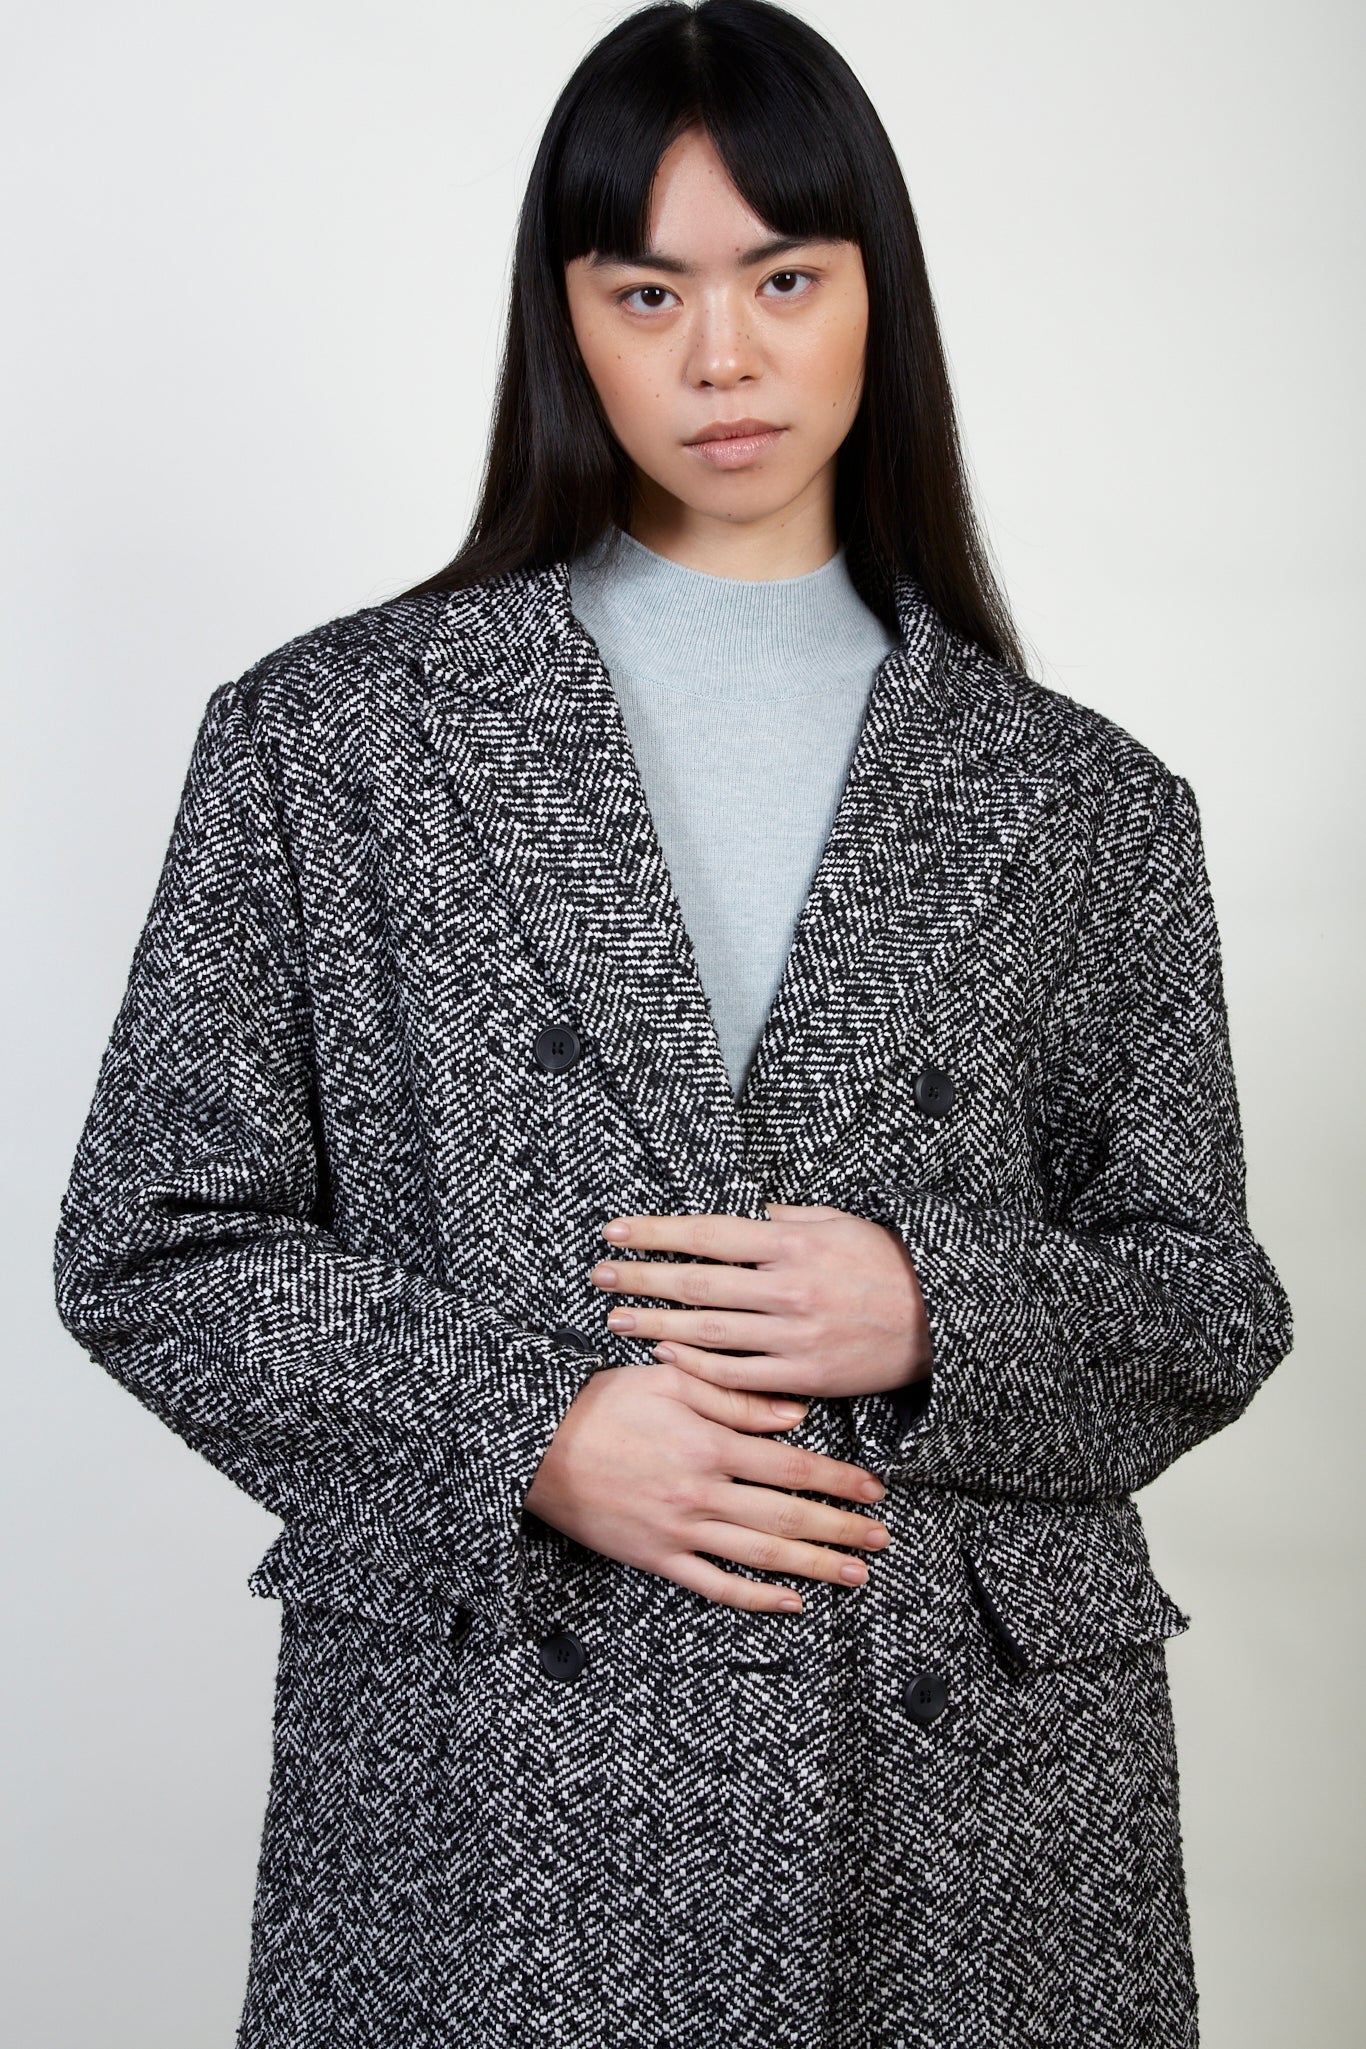 Black and white herringbone wool blend coat